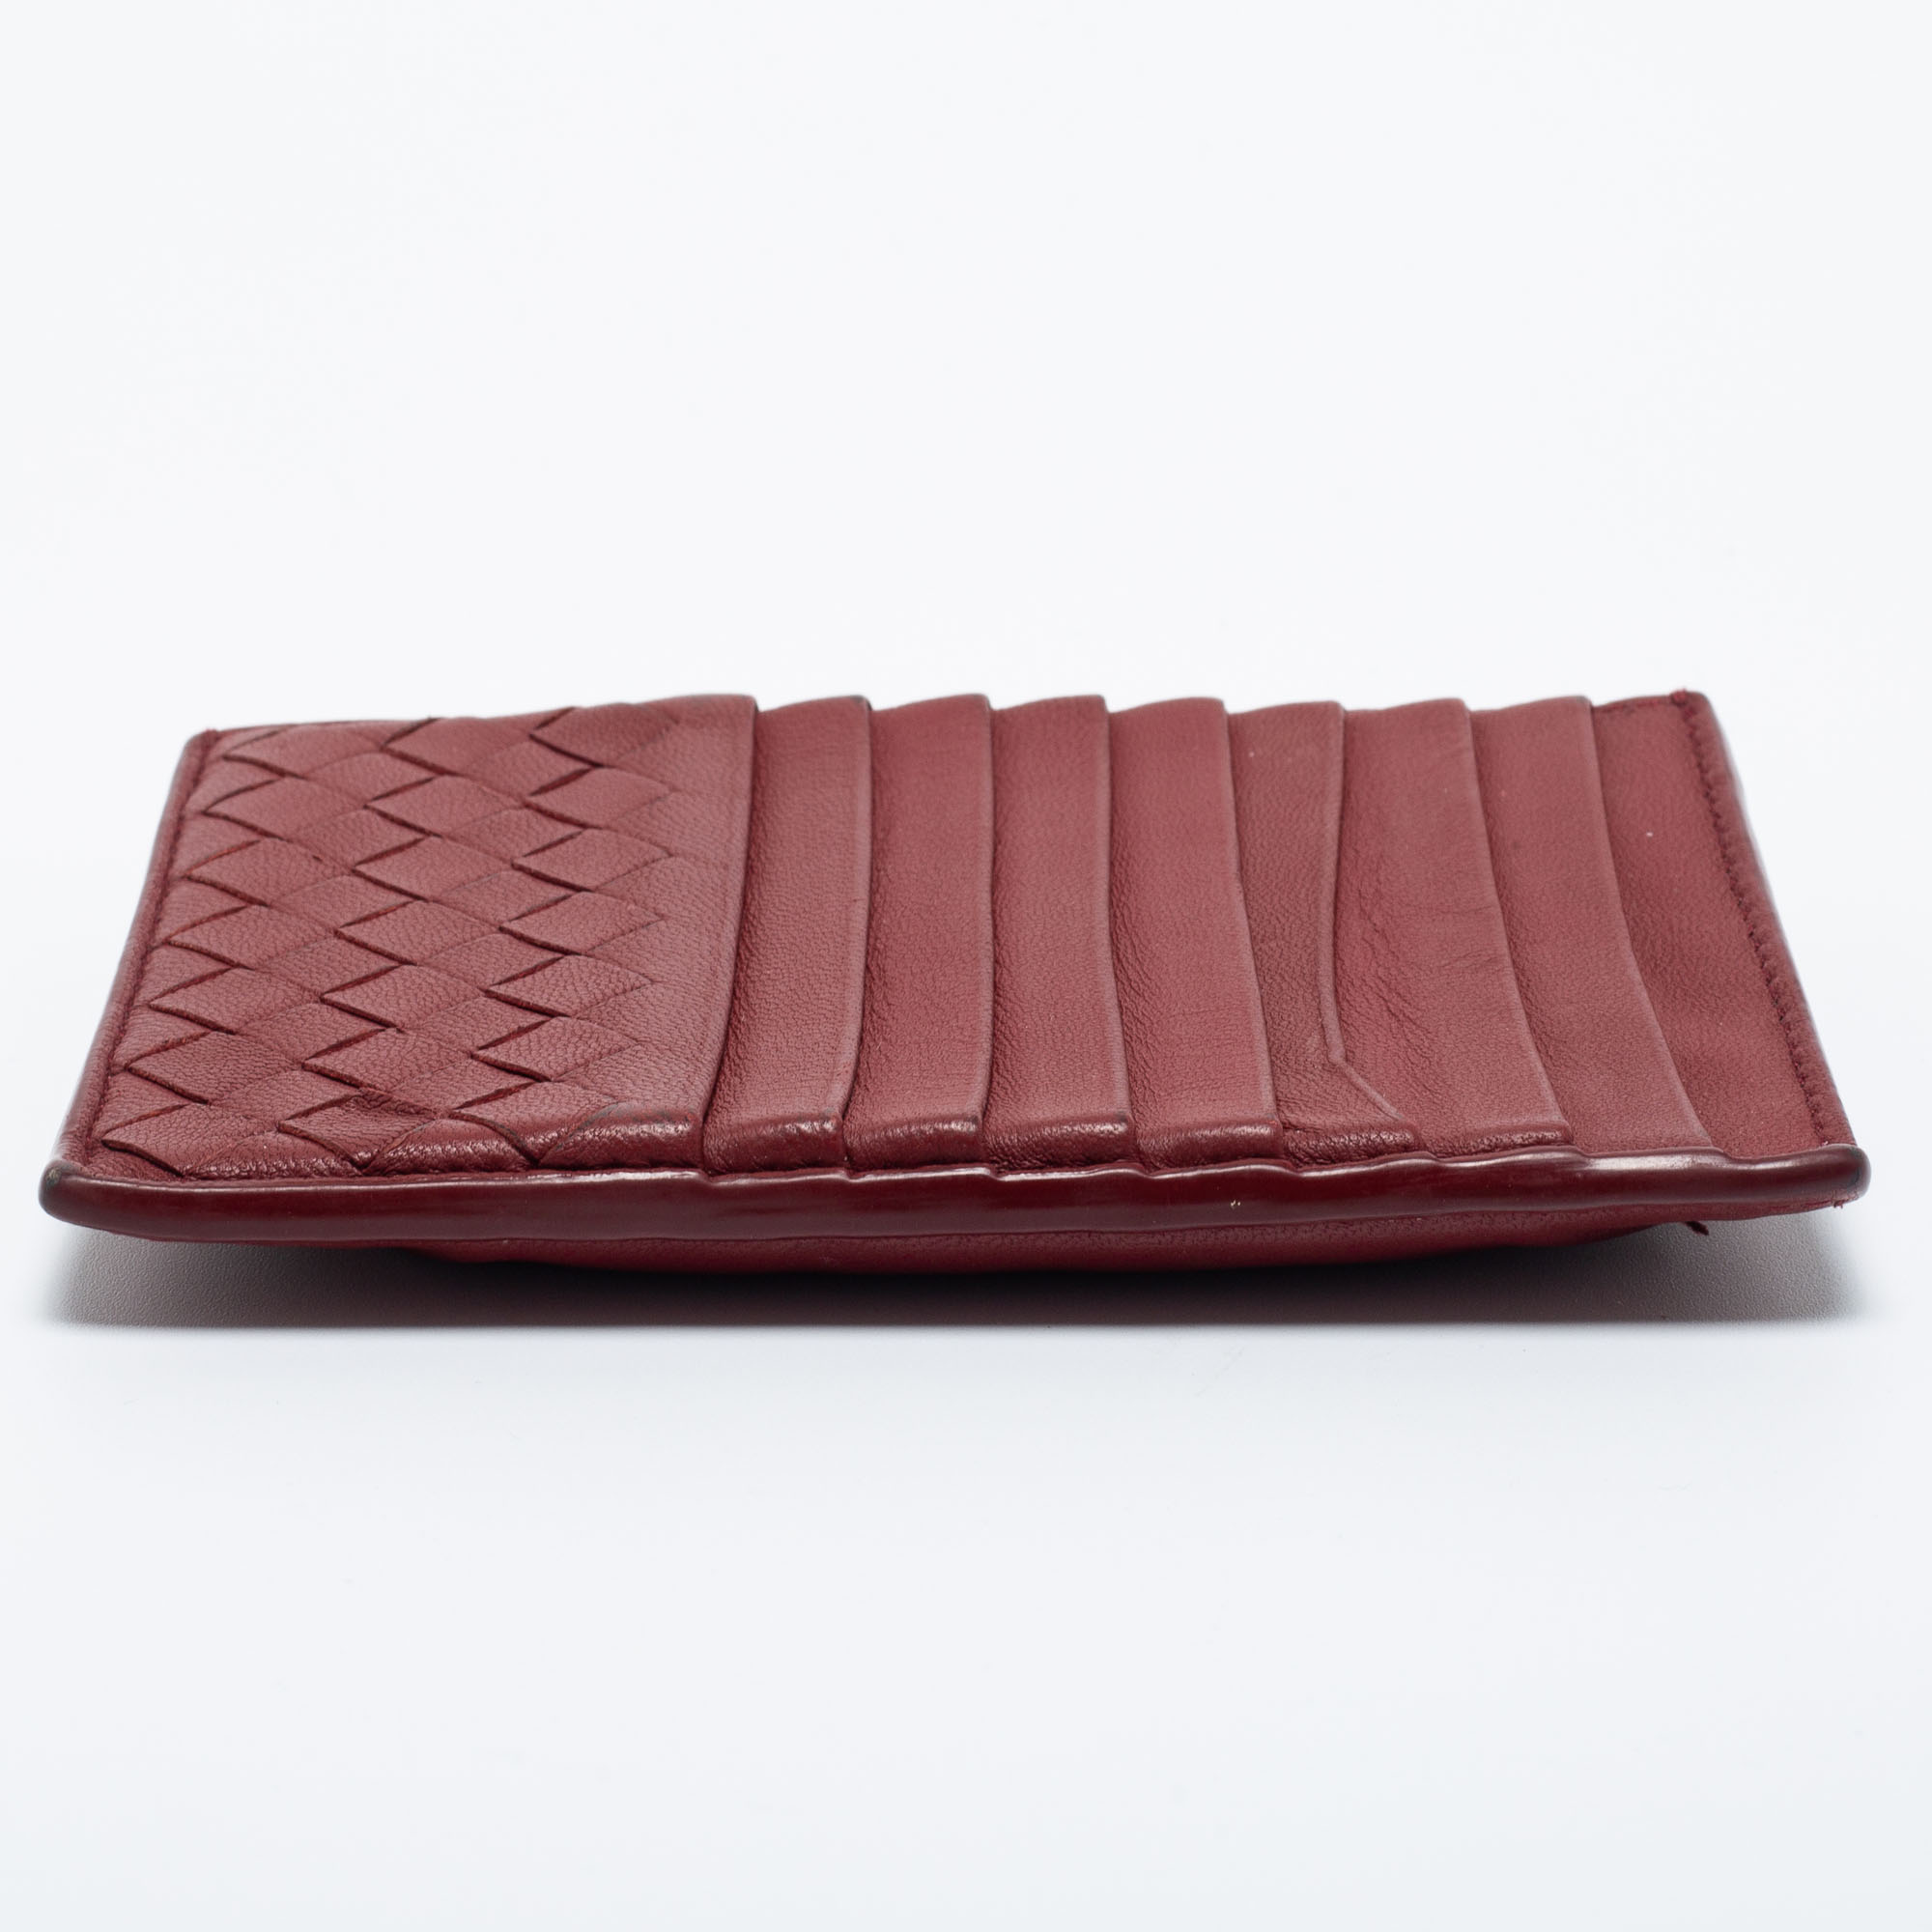 Bottega Veneta Red Leather Zip Card Holder